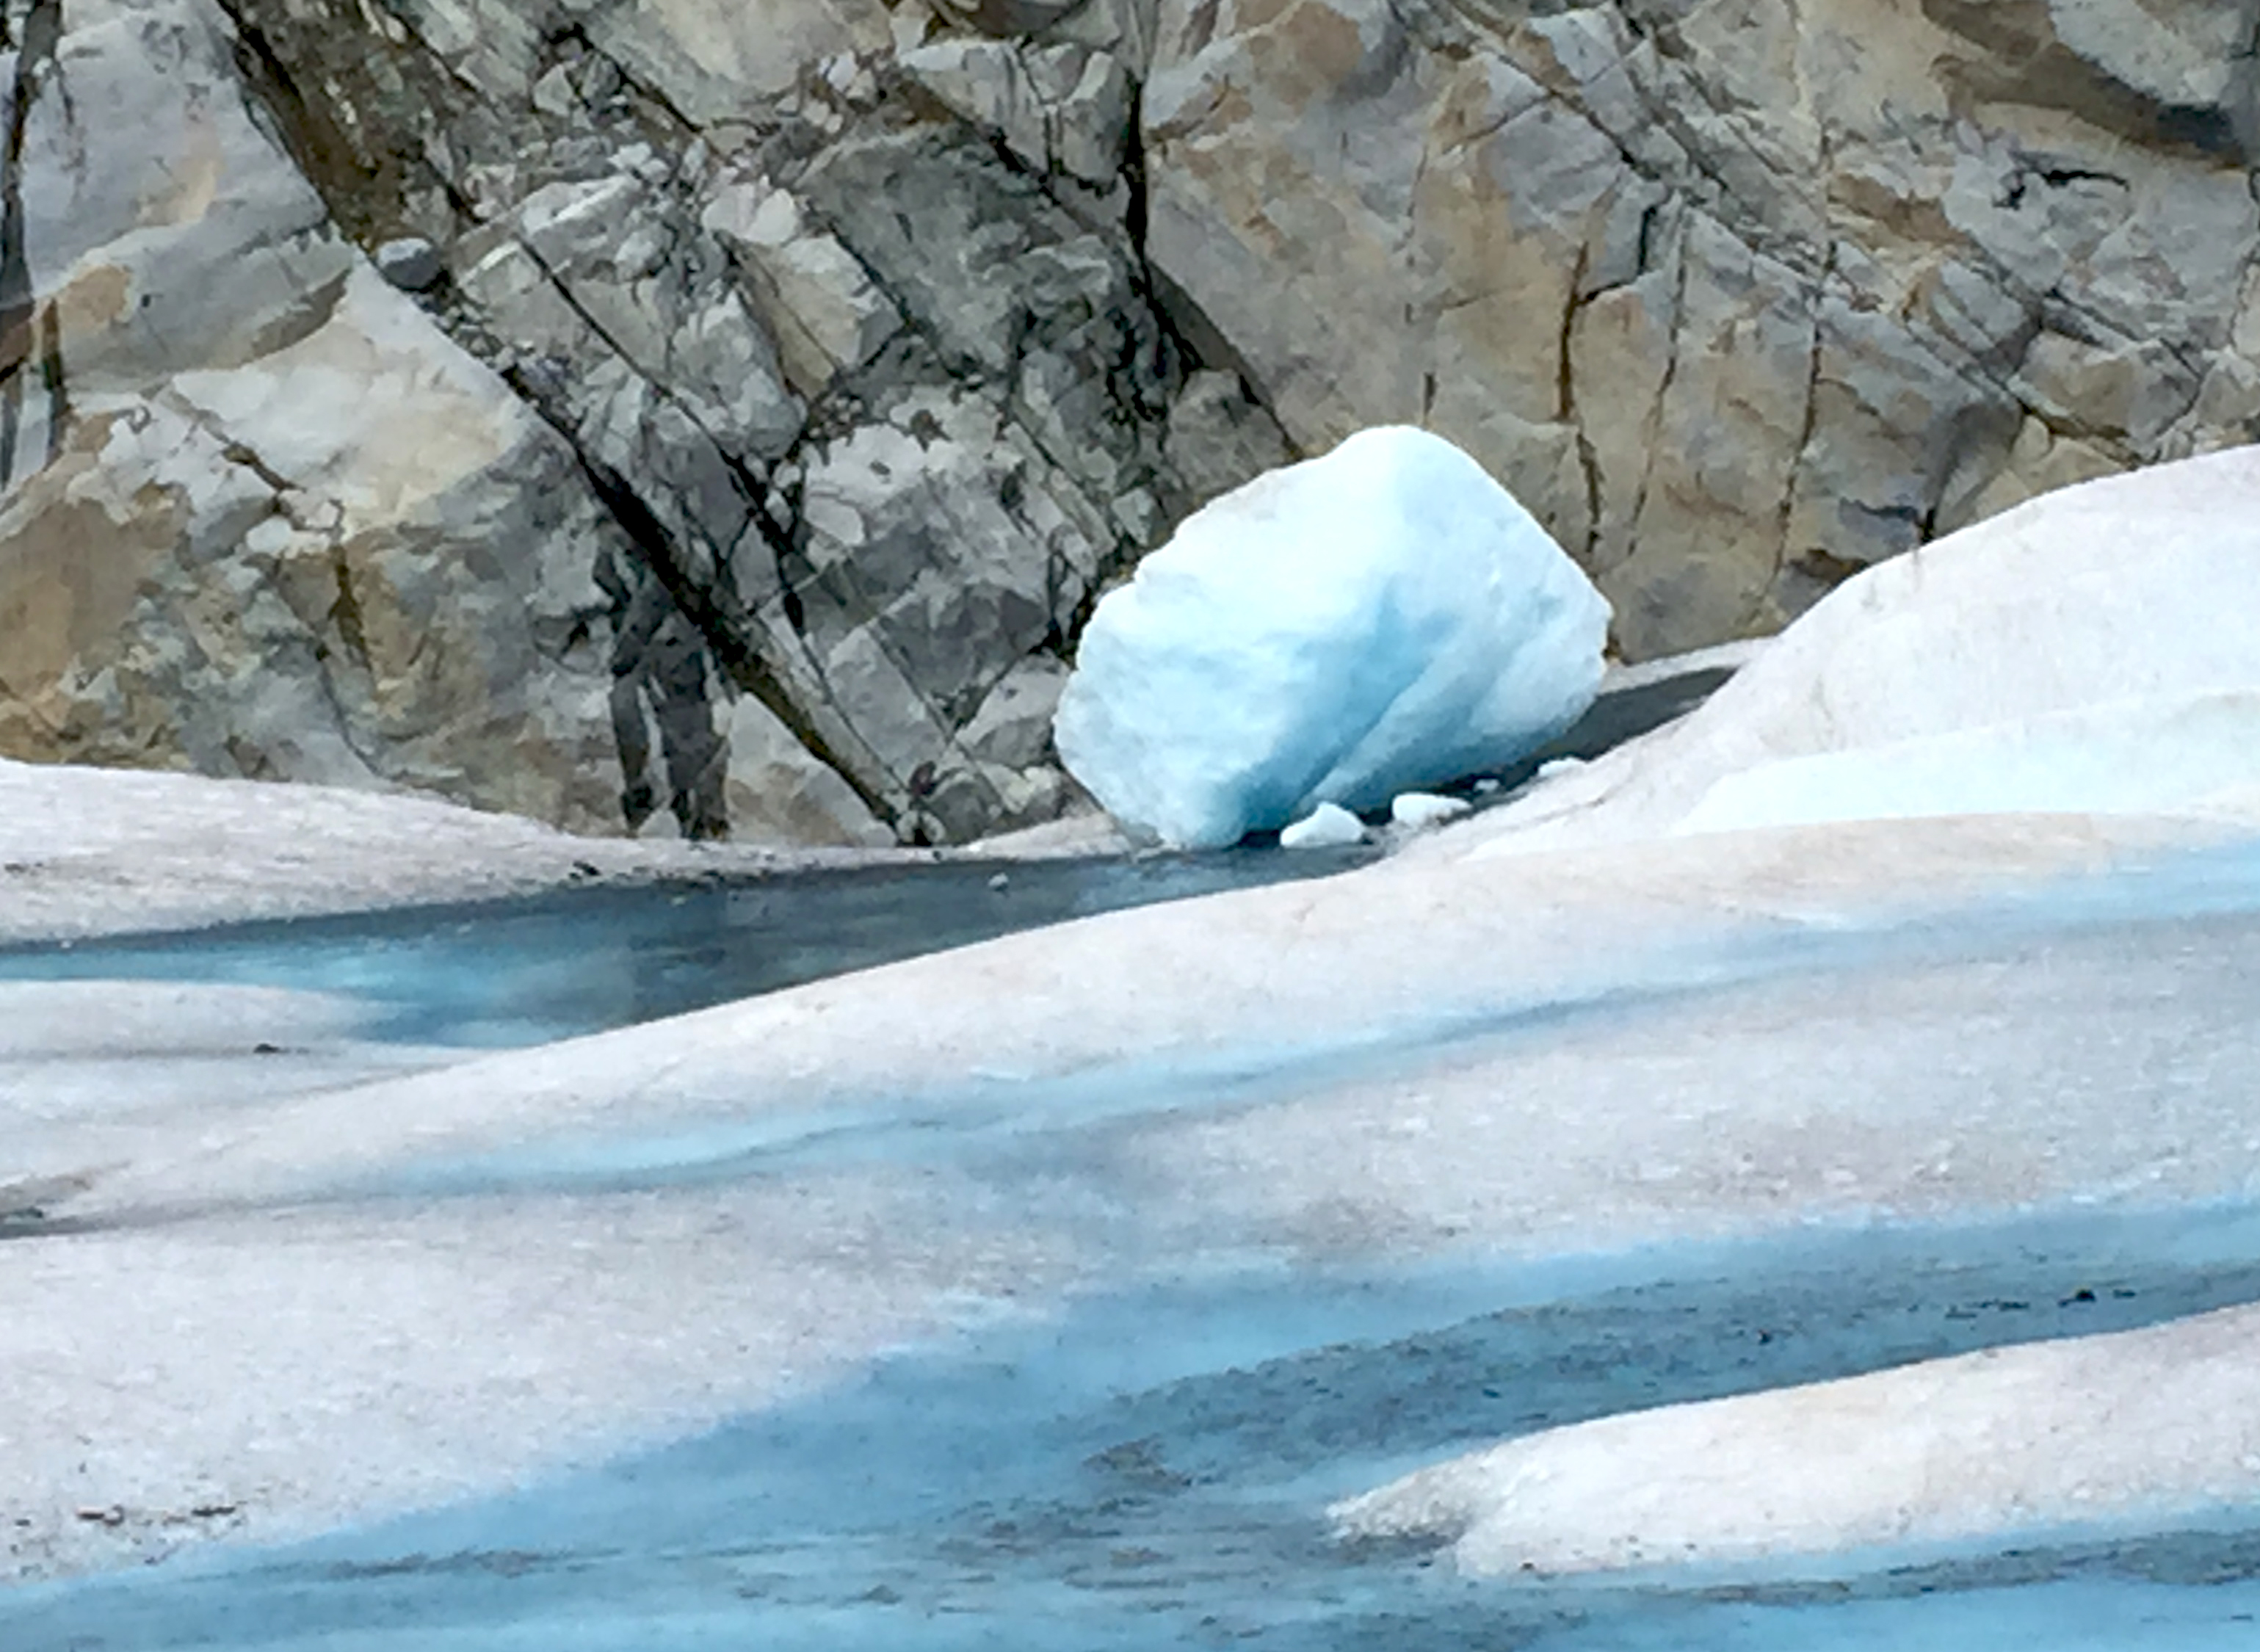 Mendenhall Glacier in Alaska